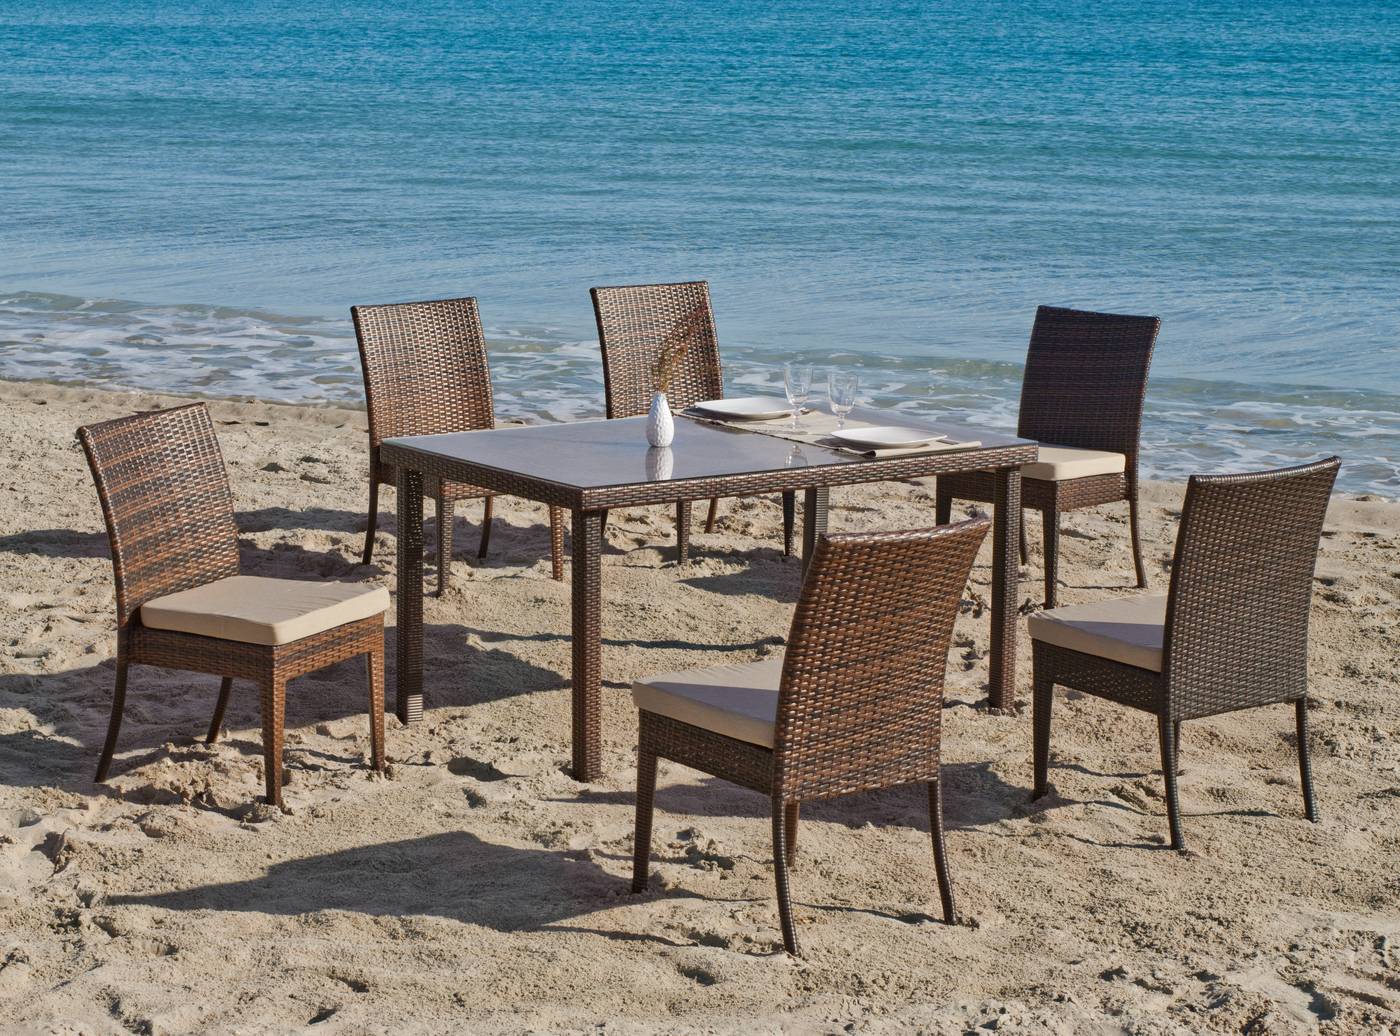 Cojunto de ratán sintético color marrón: mesa de 150 cm. con tapa de cristal templado + 4 sillas apilables + 4 cojines